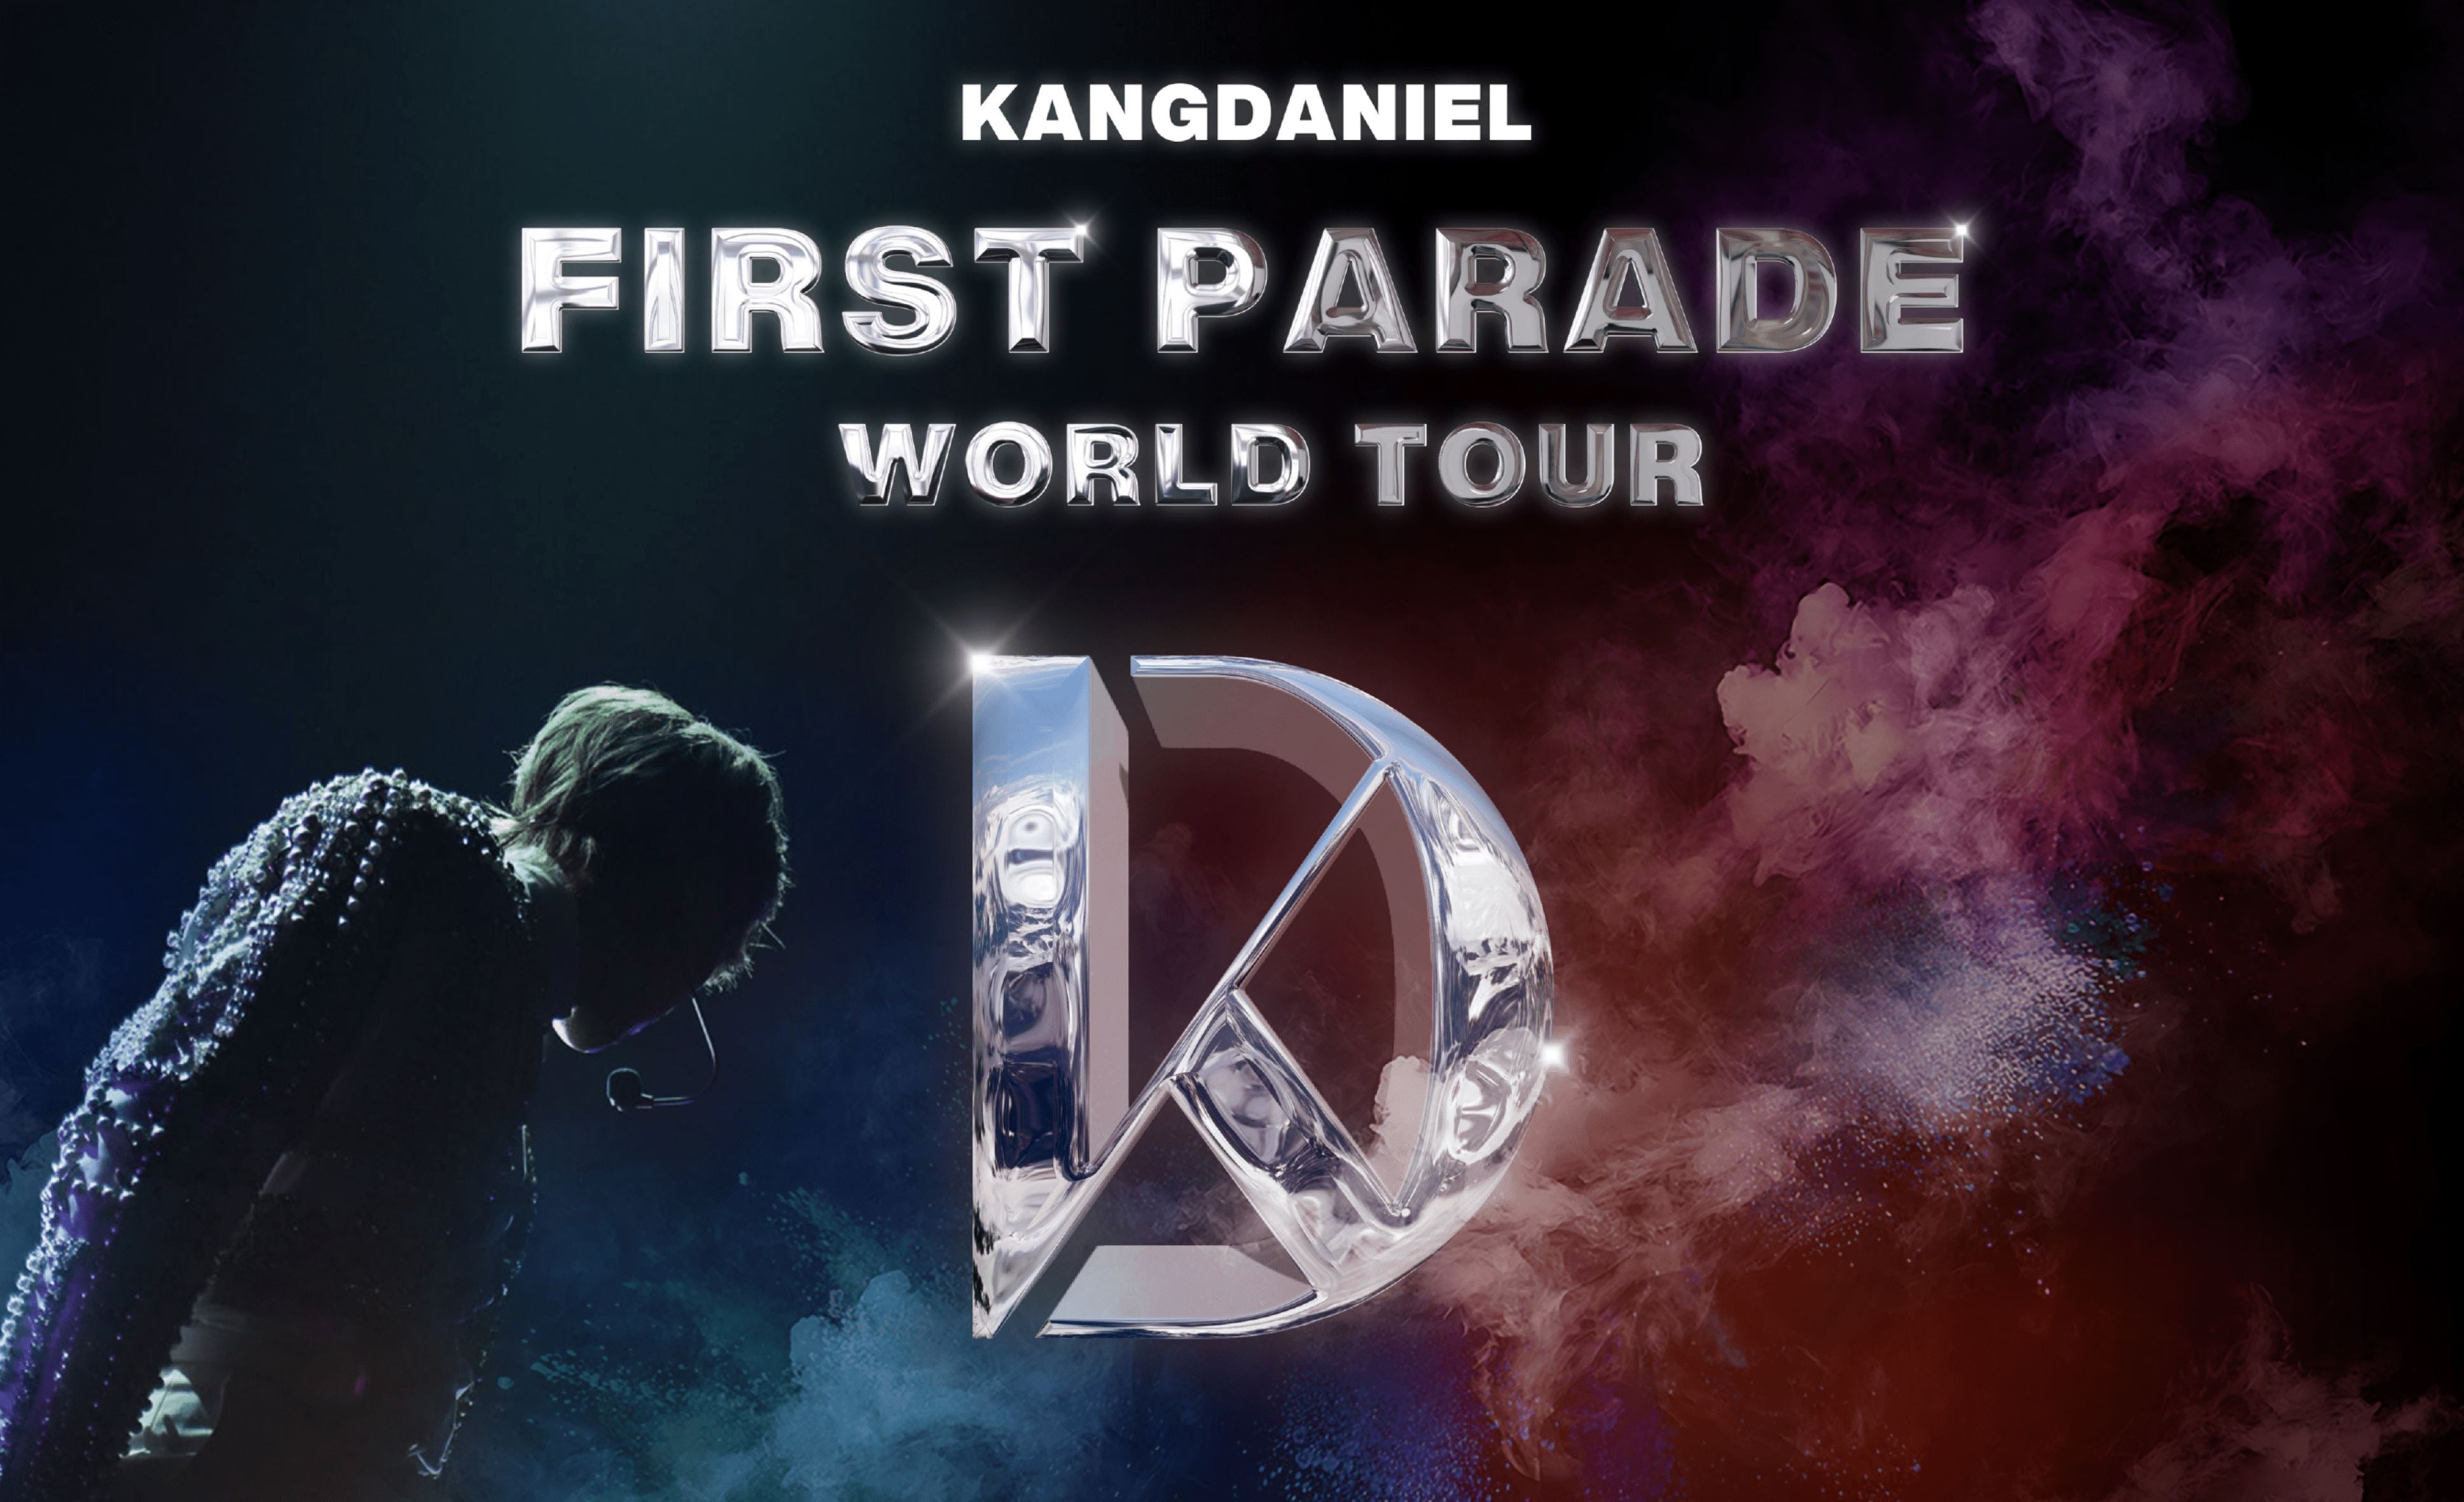 Ein weiter K-Pop Star hat Konzerte in Europa angekündigt: Kang Daniel!